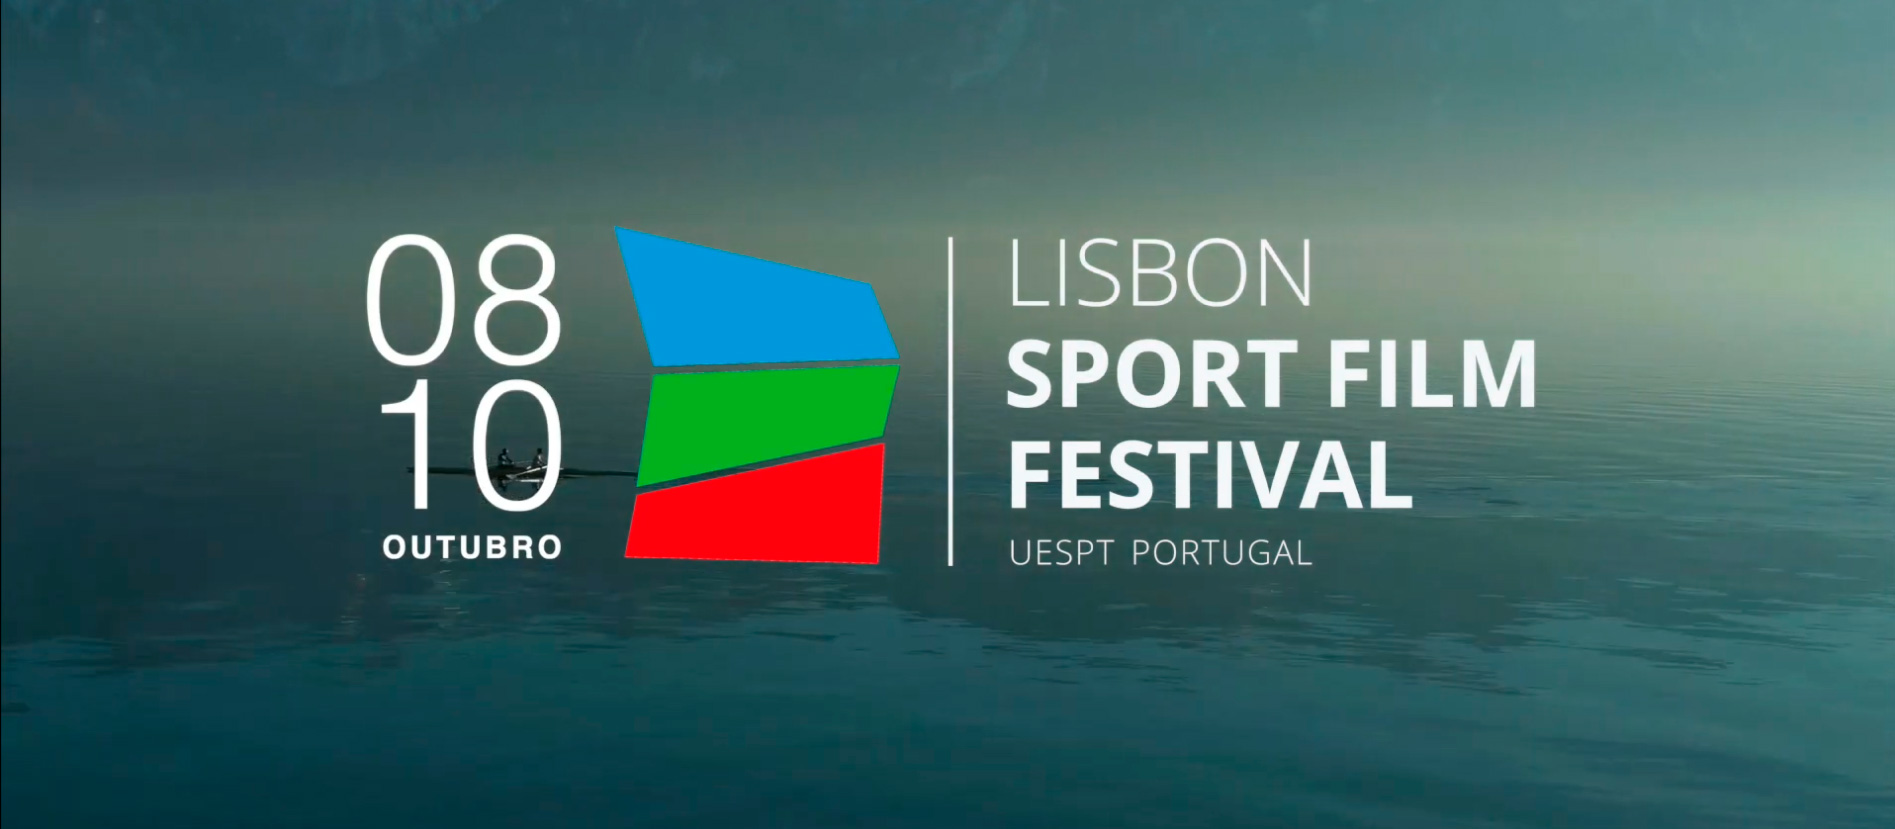 Conheça os 14 filmes selecionados para o Lisbon Sport Film Festival 2021